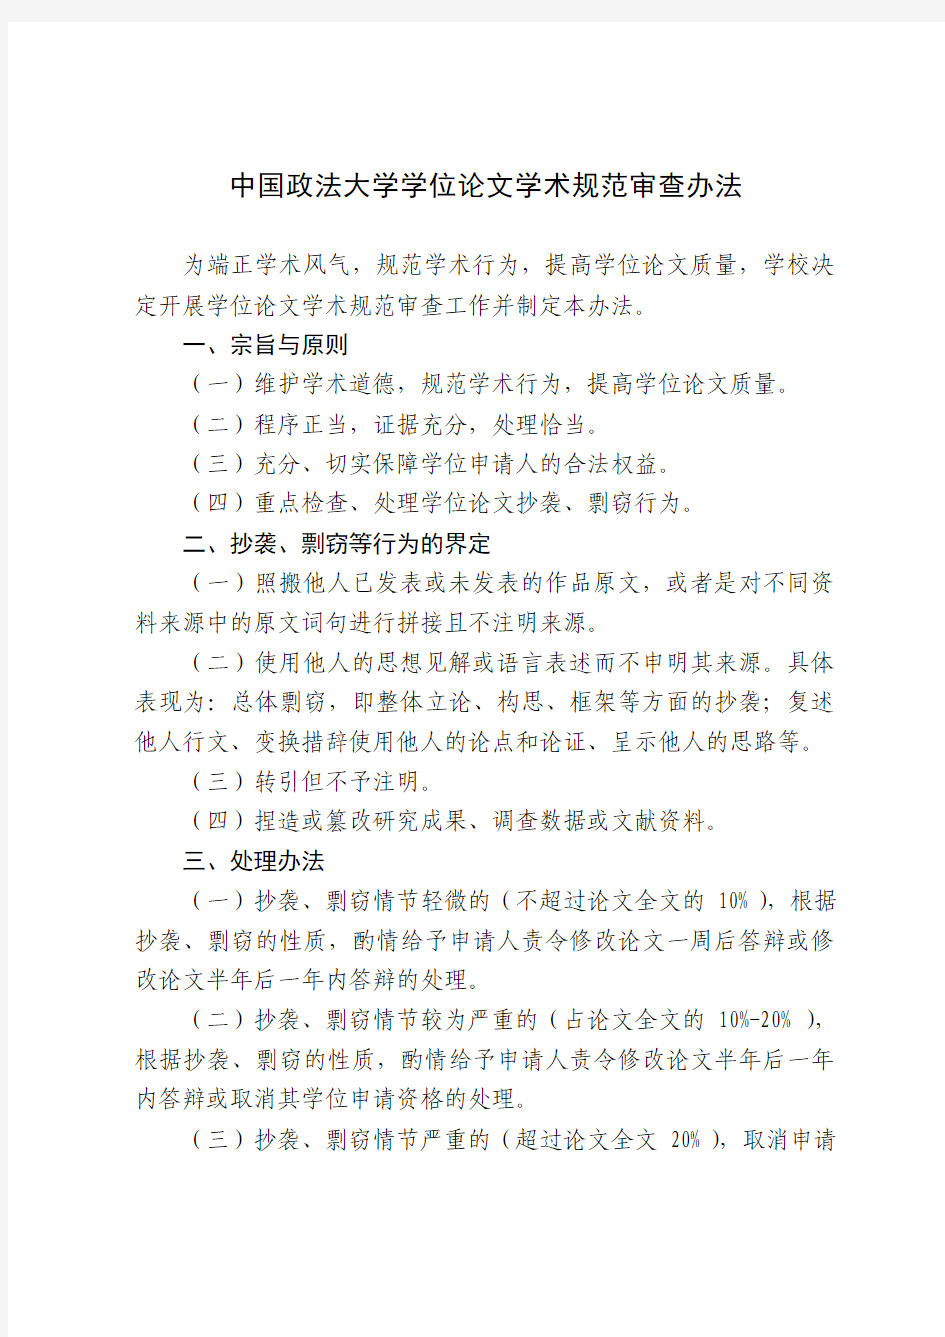 中国政法大学学位论文学术规范审查办法